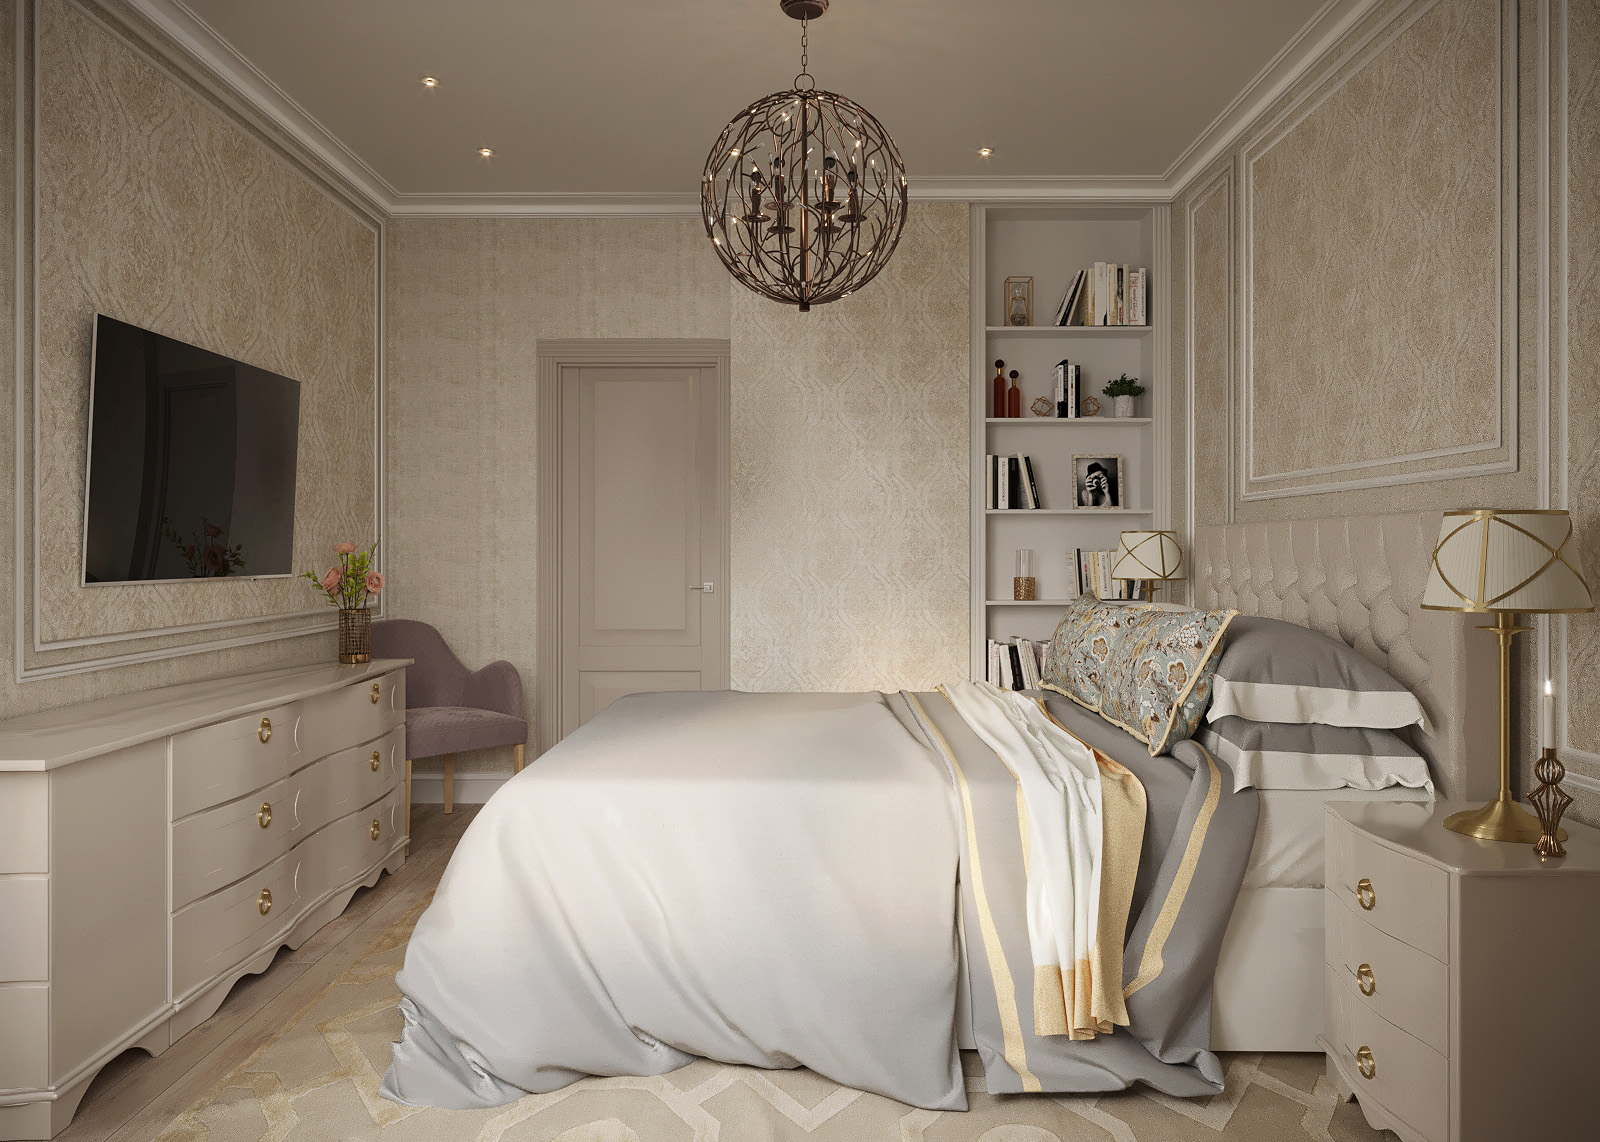 Klasik tarz yatak odası in 3d max corona render resim